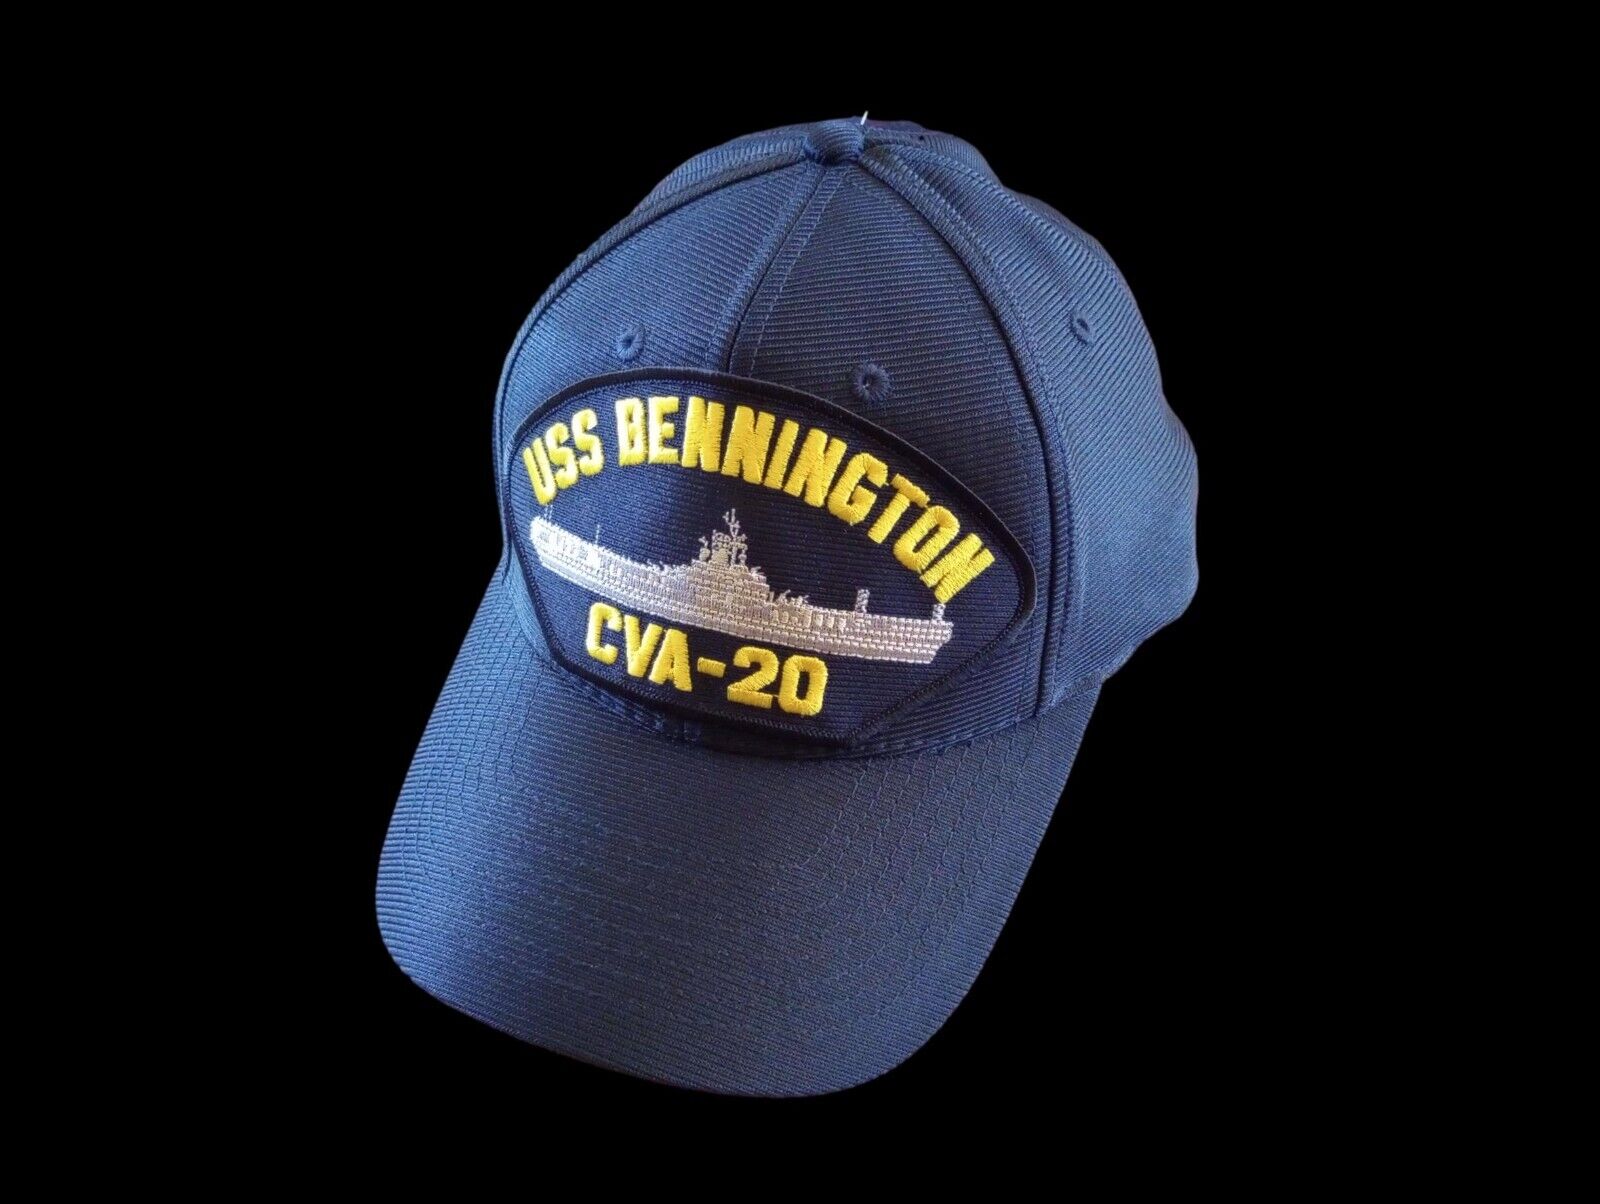 USS BENNINGTON CVA-20 NAVY SHIP HAT OFFICIAL U.S MILITARY BALL CAP U.S.A. MADE